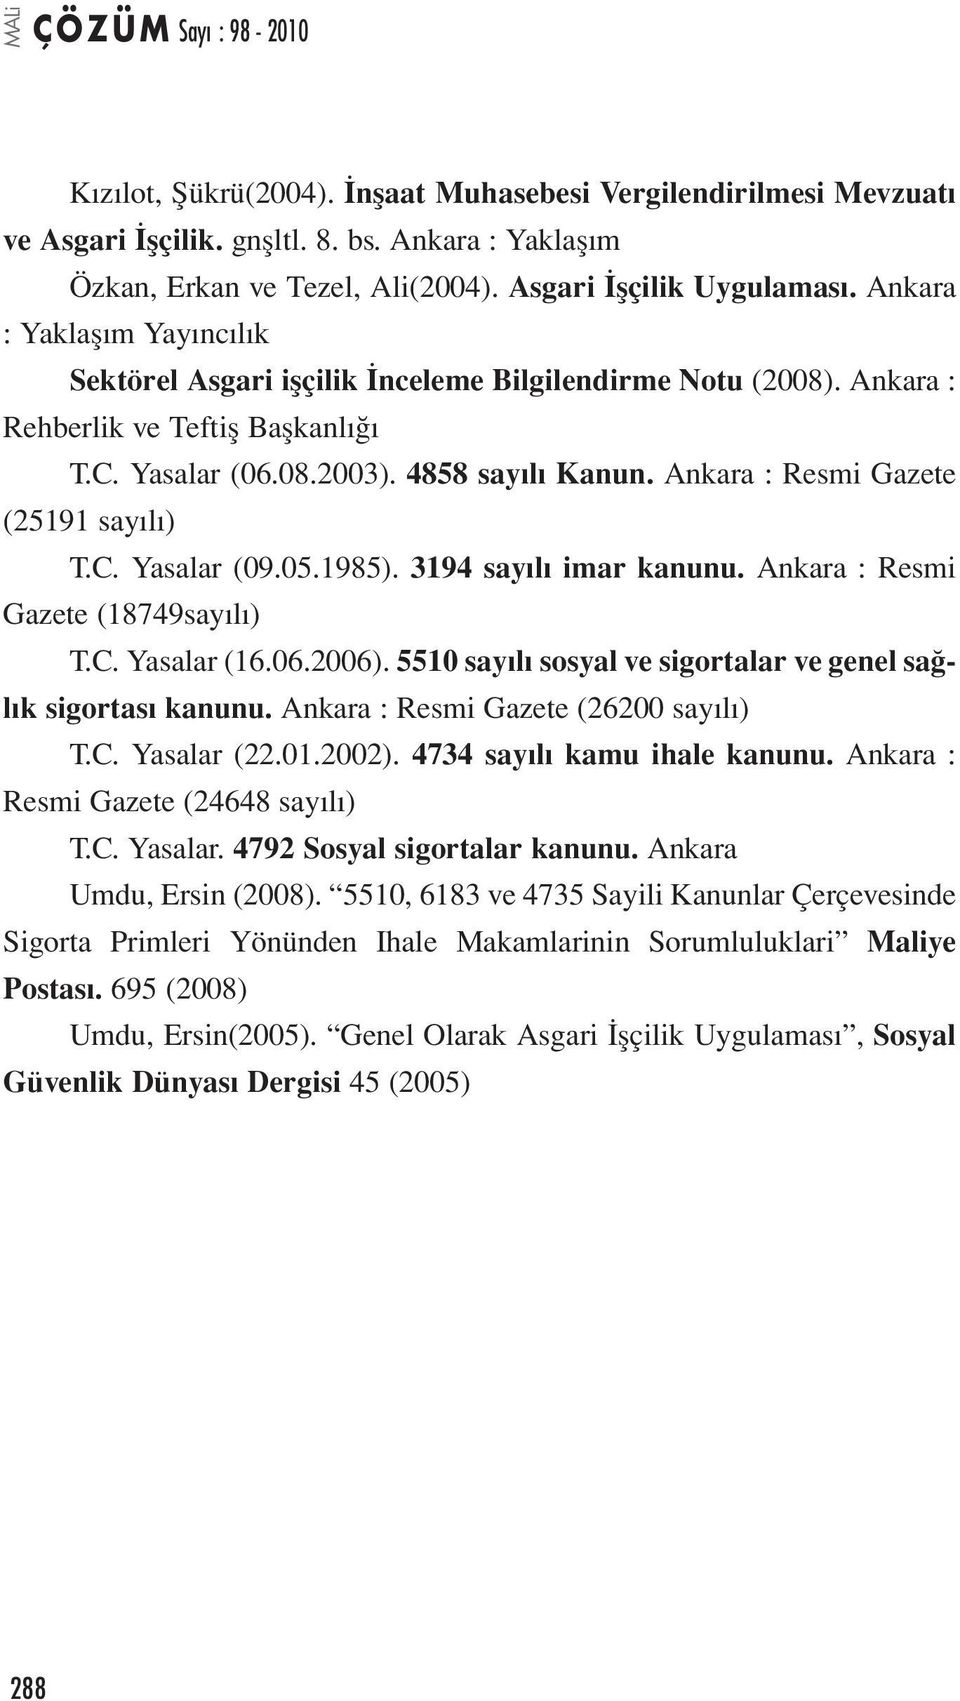 Ankara : Resmi Gazete (25191 sayılı) T.C. Yasalar (09.05.1985). 3194 sayılı imar kanunu. Ankara : Resmi Gazete (18749sayılı) T.C. Yasalar (16.06.2006).